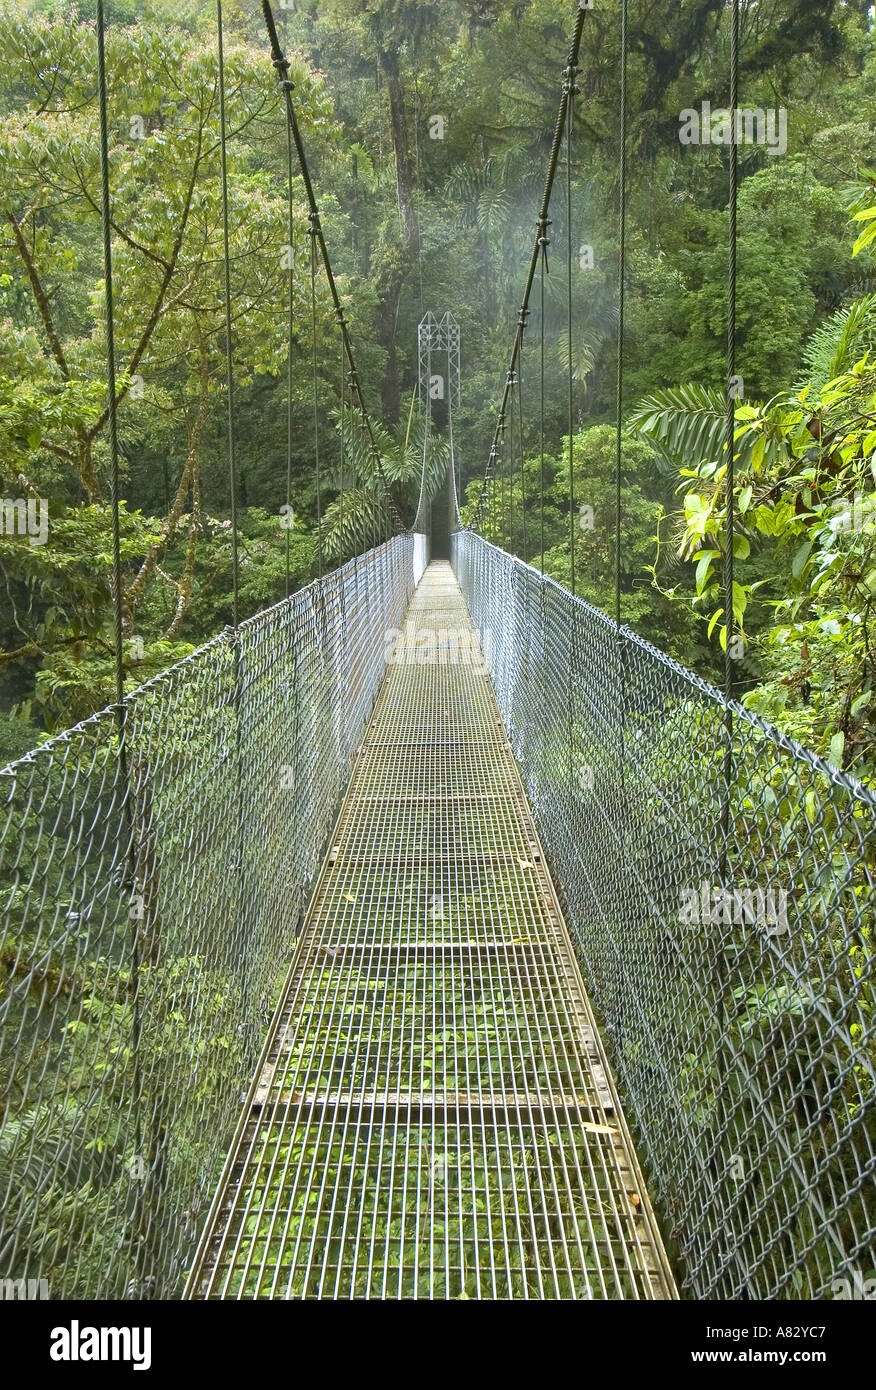 Puentes Colgantes el Arenal, Costa Rica Fotografía de - Alamy